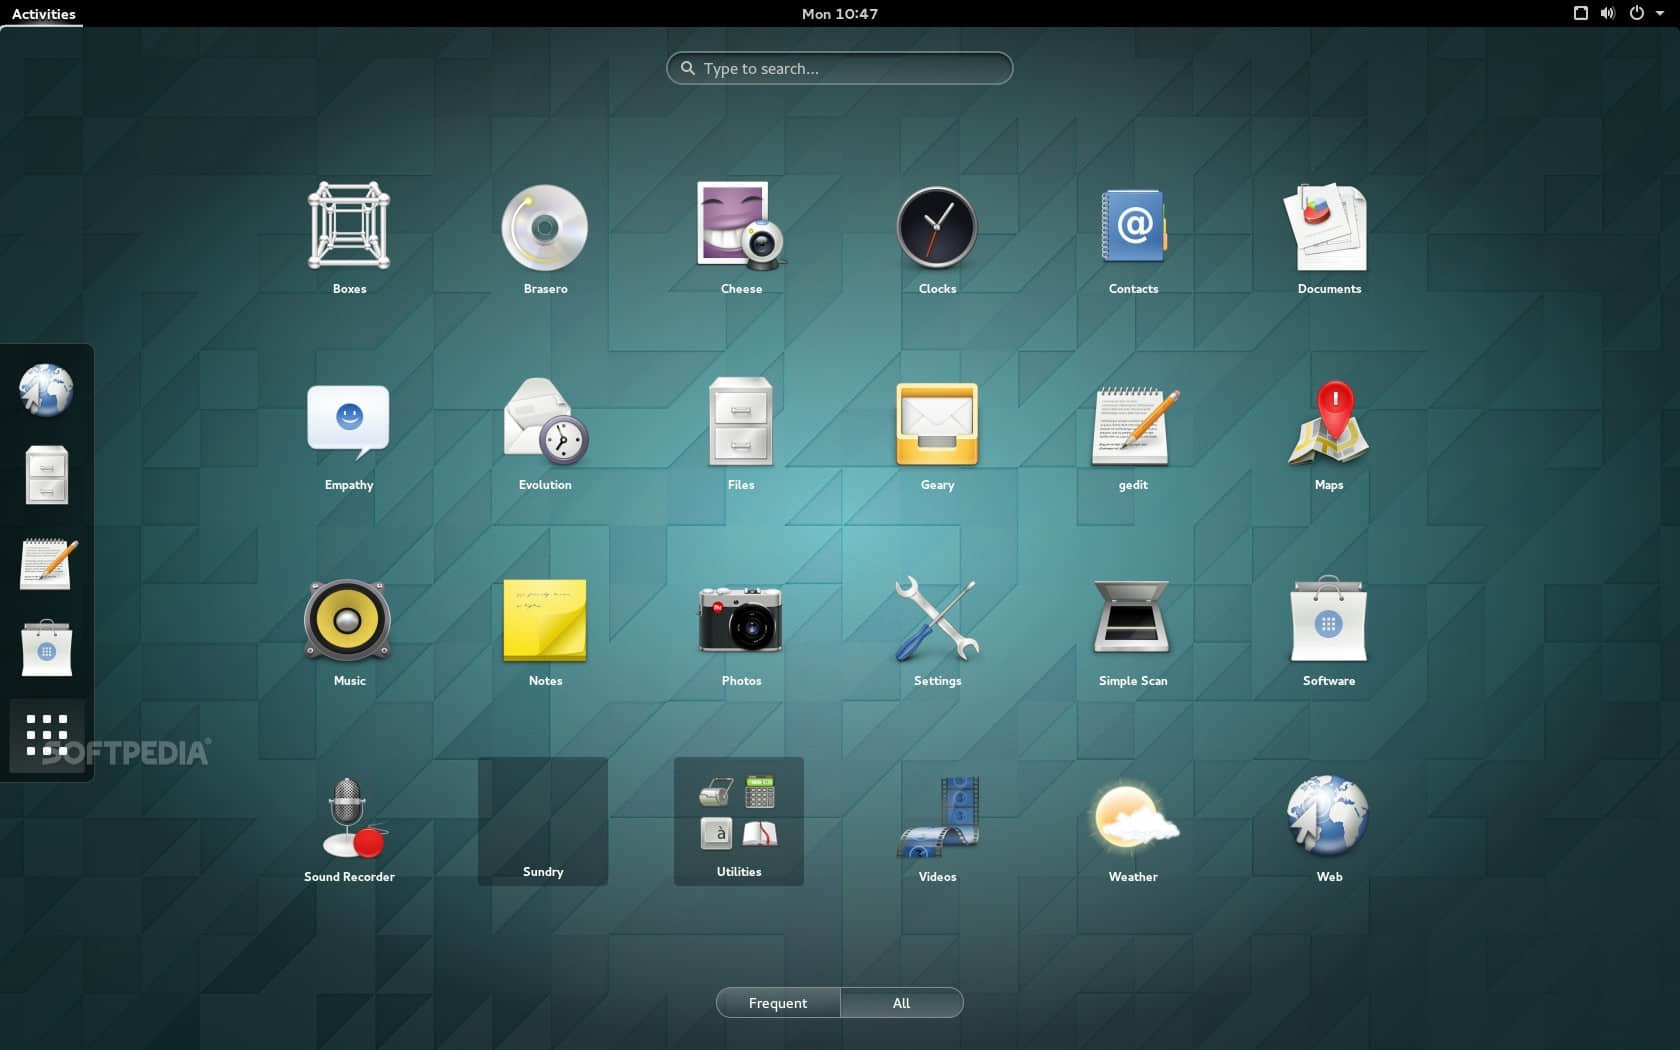 The GNOME 3.14 desktop